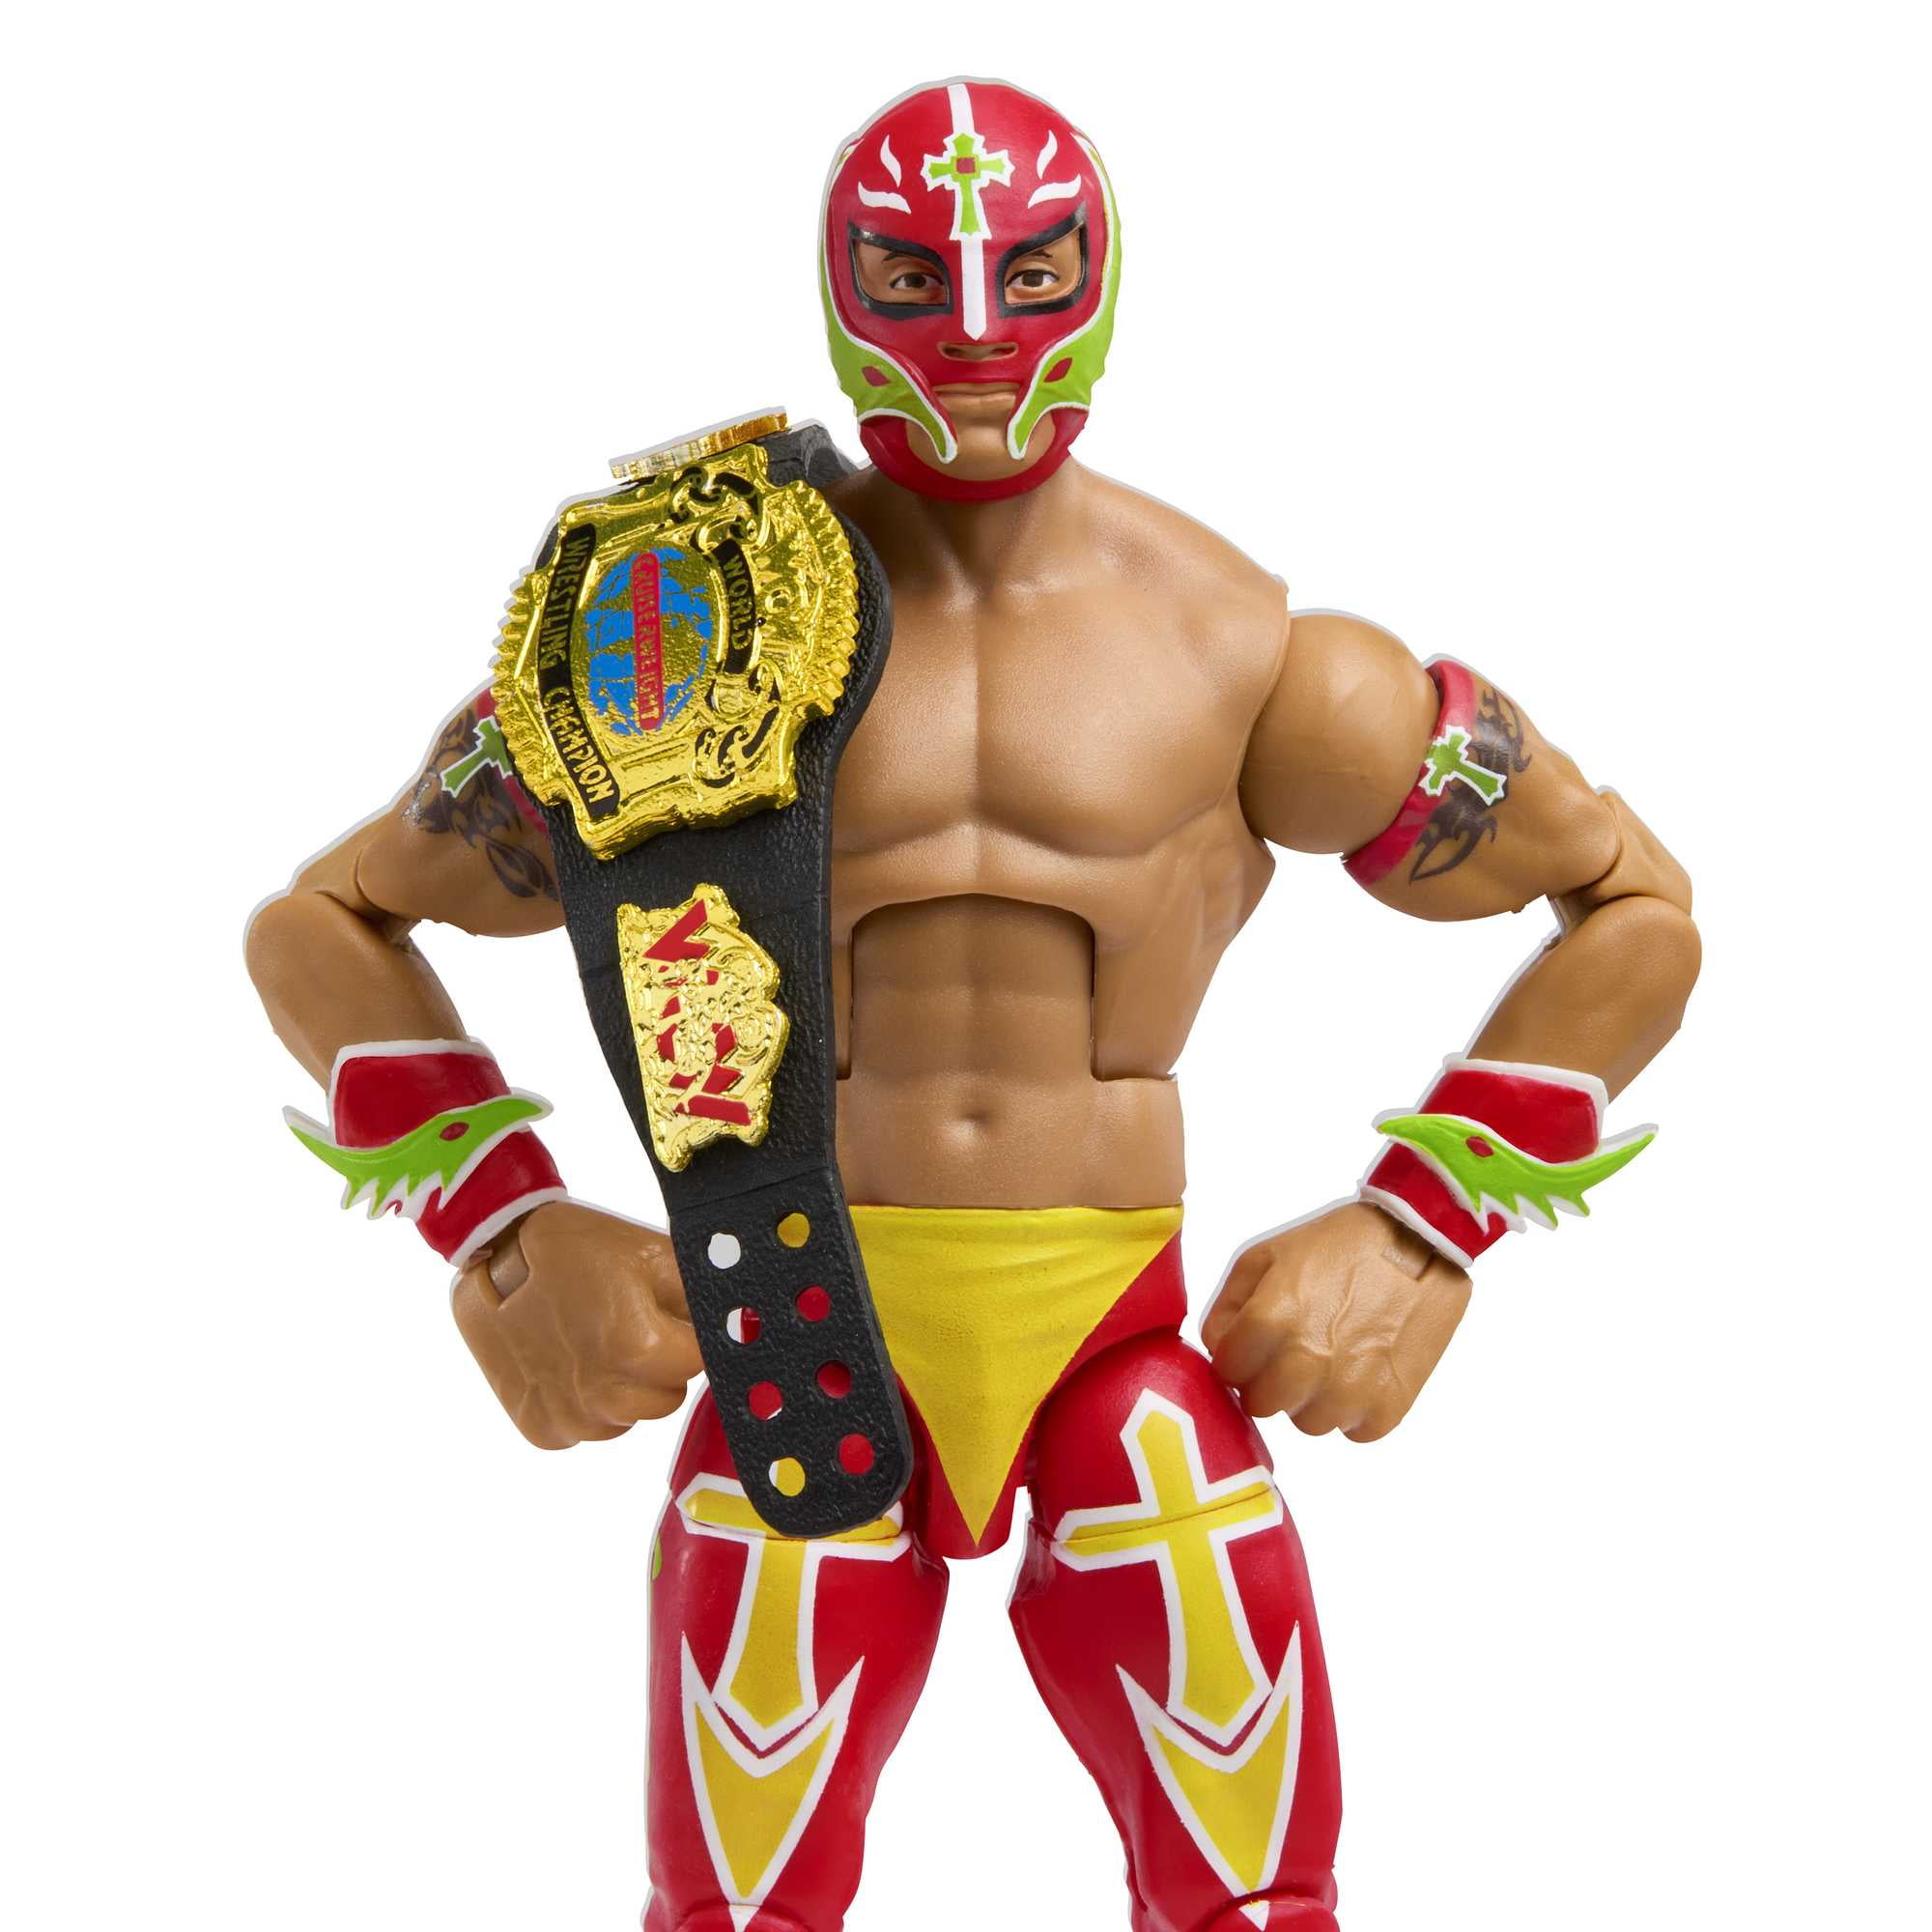 Figura de acción WWE Rey Mysterio Elite Collection WWE WWE